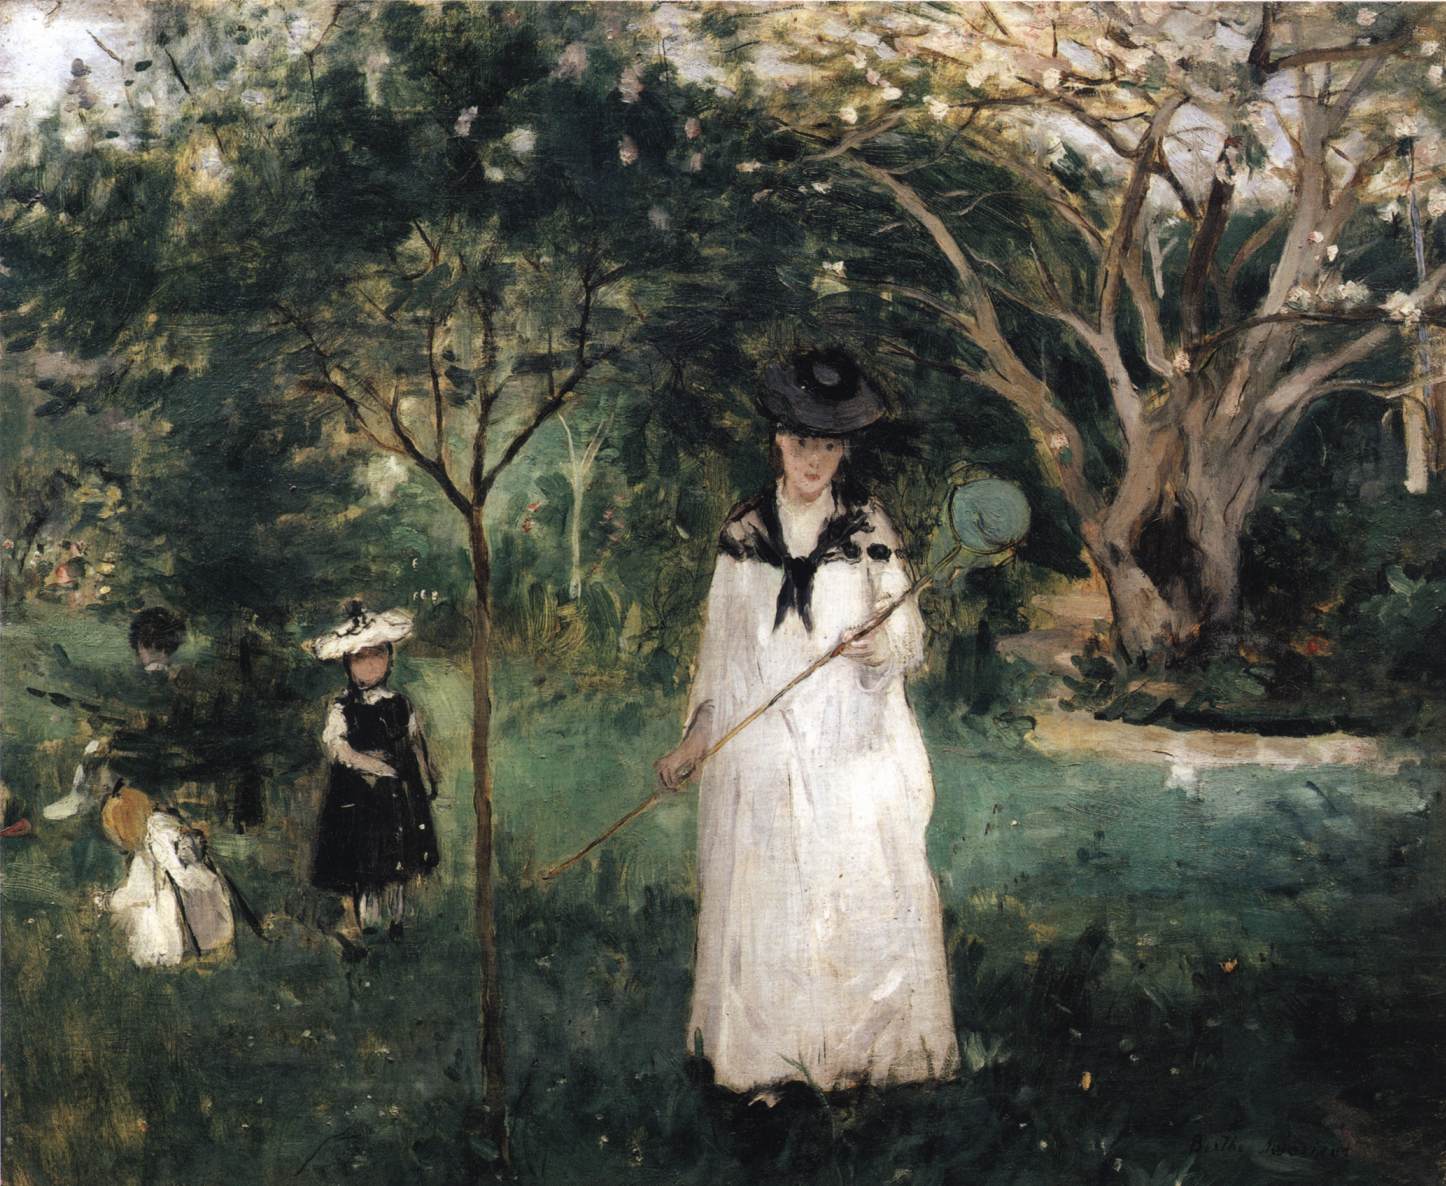 Chasing Butterflies by Berthe Morisot - 1874 - 56 x 46 cm Musée d'Orsay